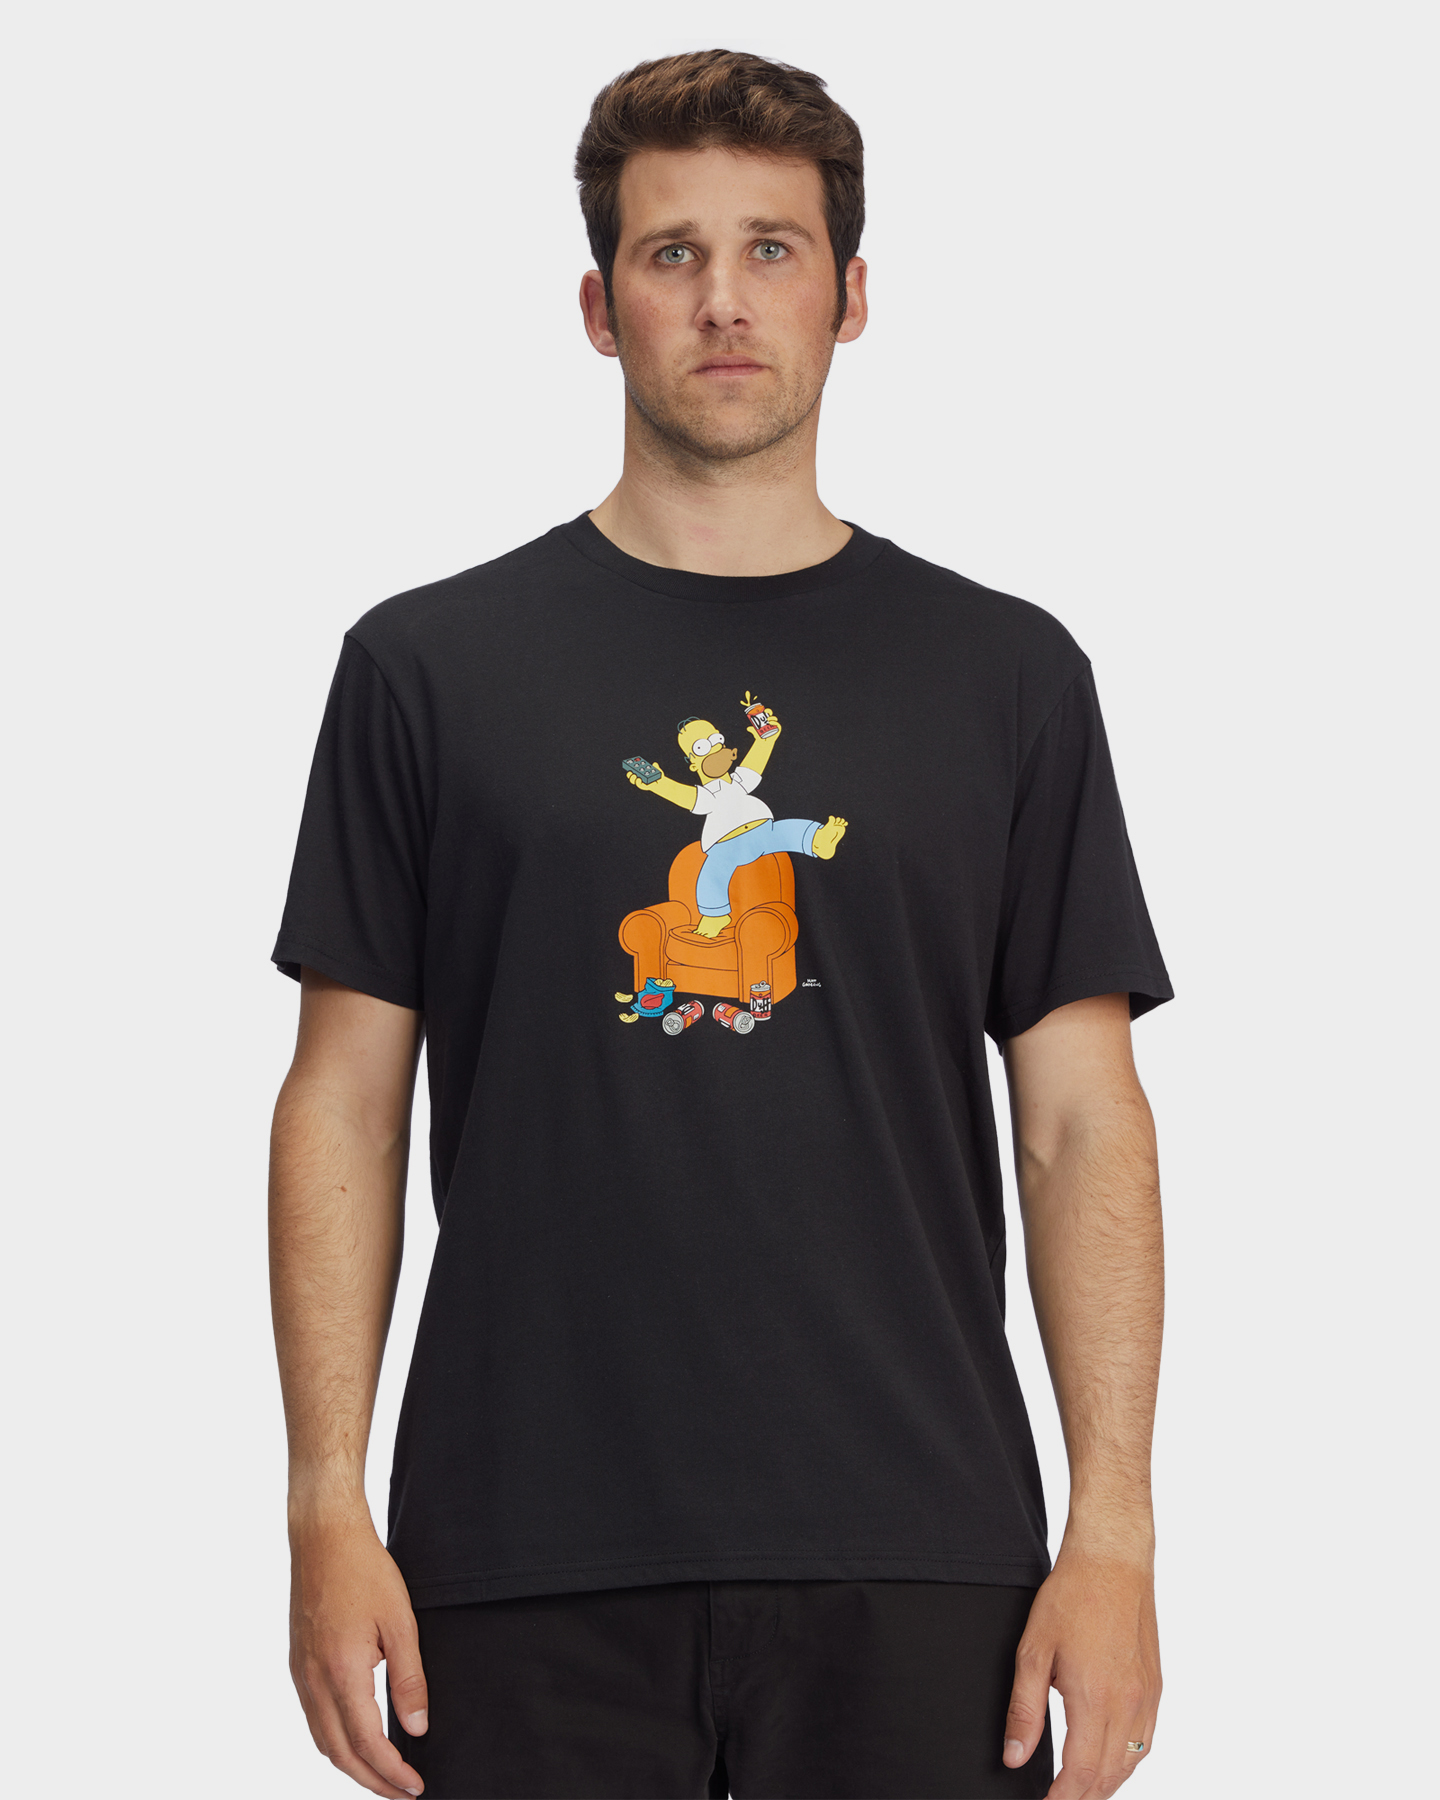 Billabong Simpsons Duff Homer T-Shirt - Black | SurfStitch